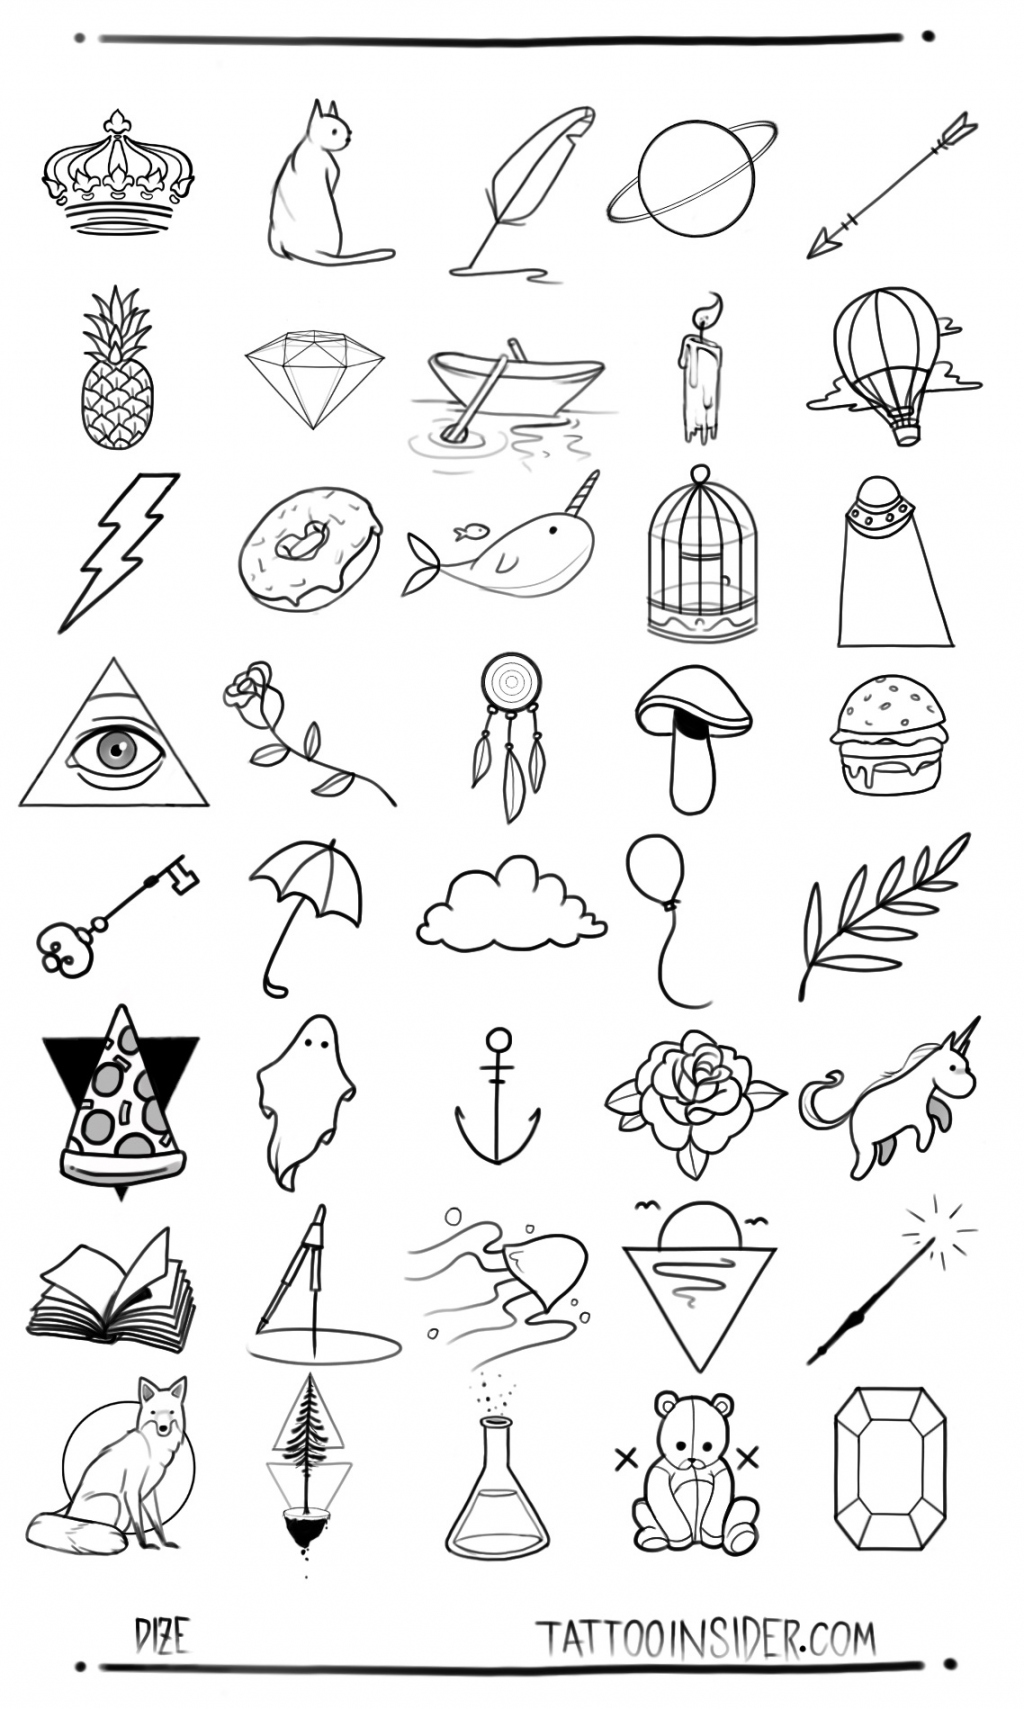 Free Small Tattoo Designs - Tattoo Insider - FREE Printables - Free Printable Tattoo Stencils Designs